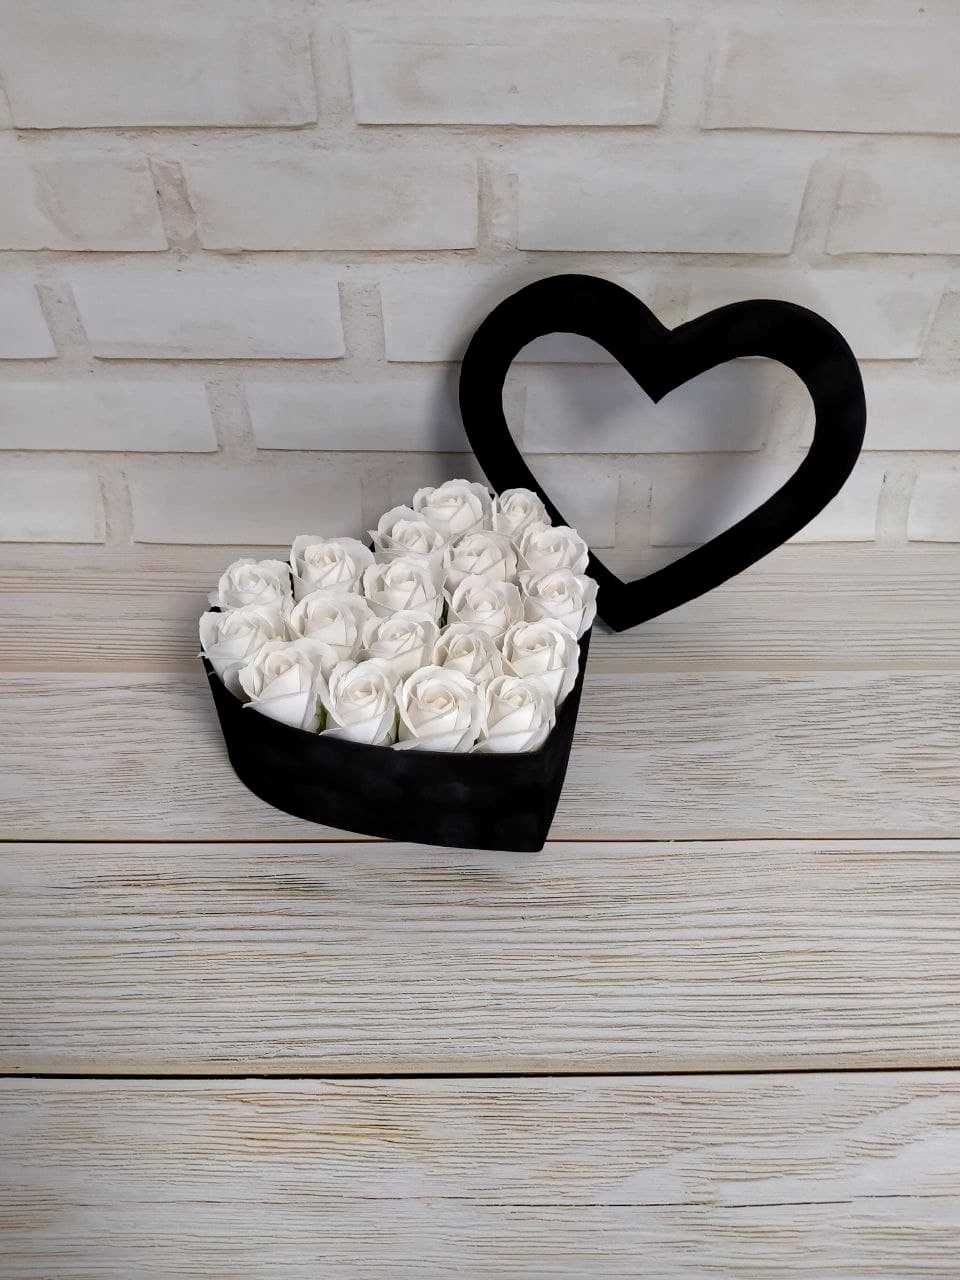 Подарочная коробка с мыльными розами, 19 белых роз, коробка в виде сердца